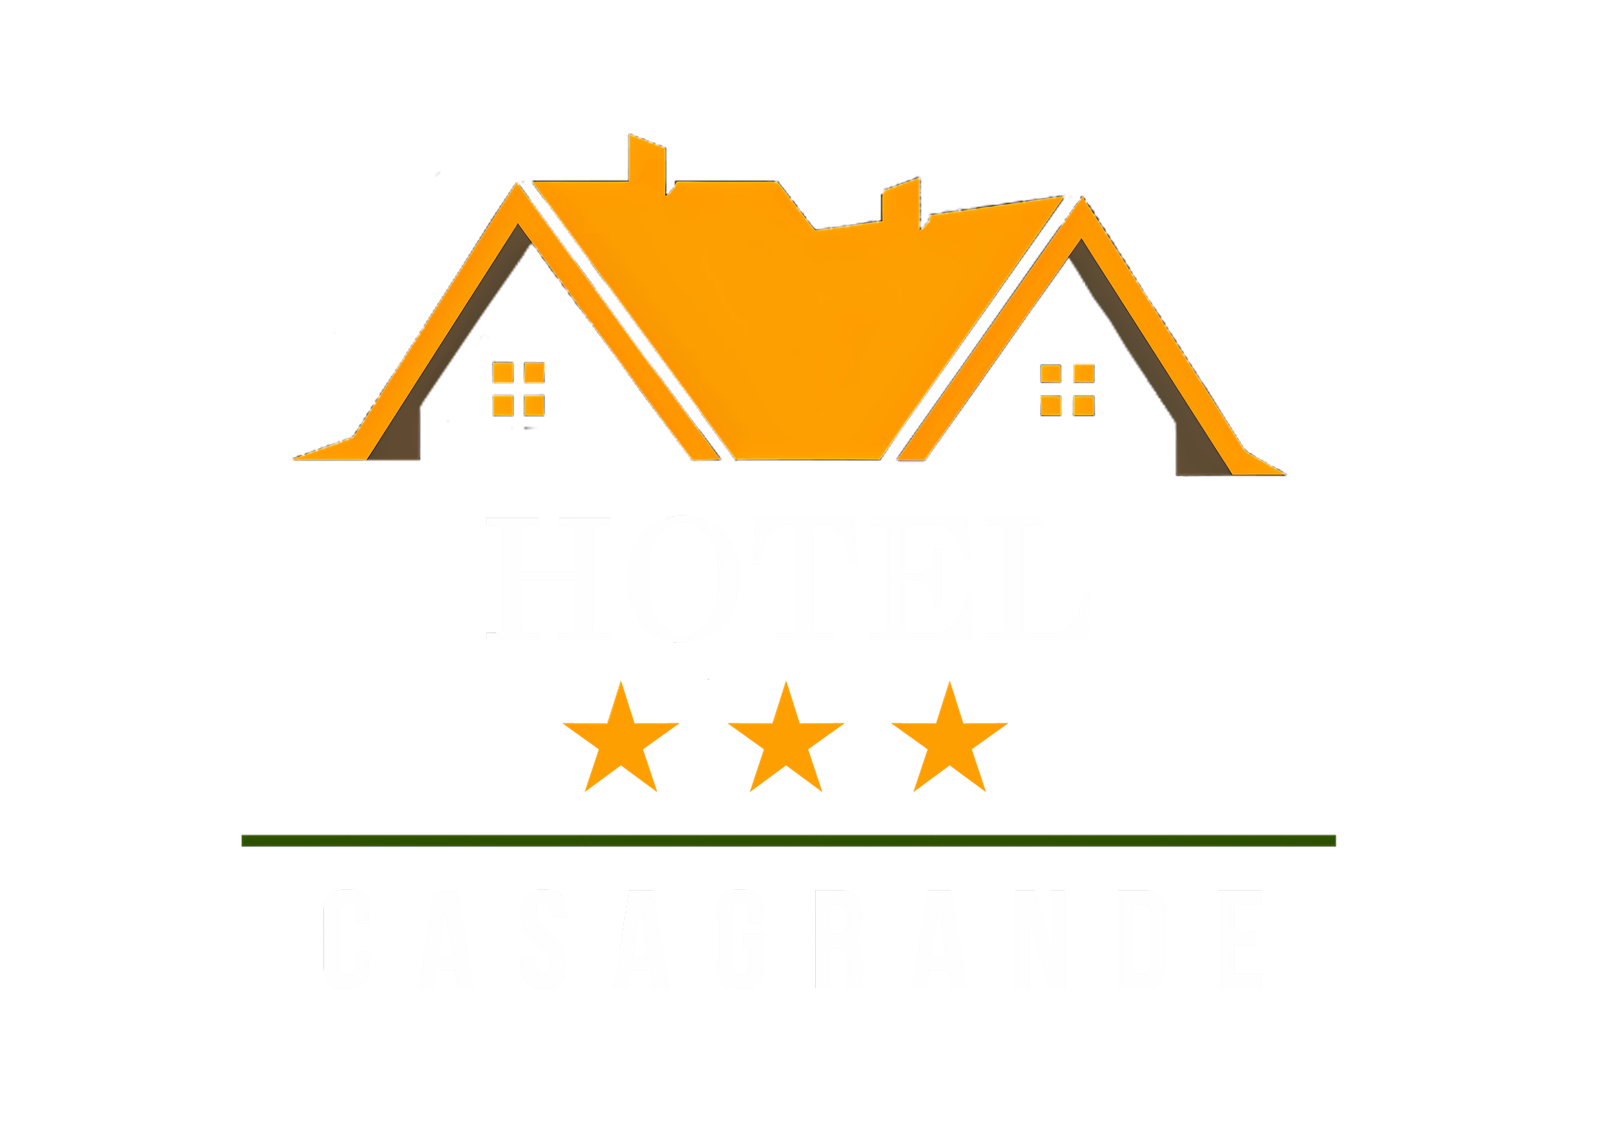 Casagrande Hotel